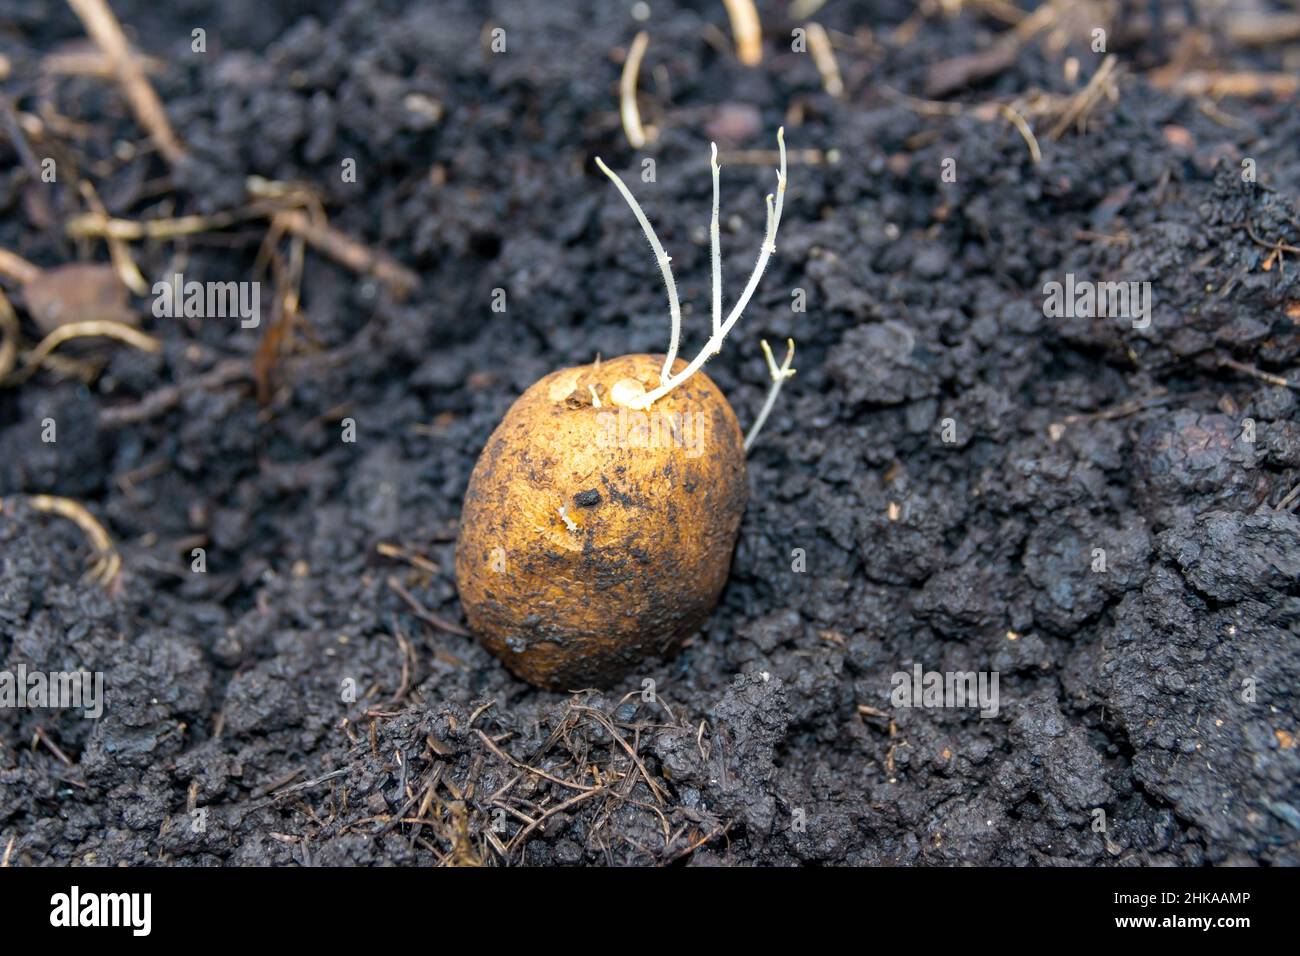 sulla terra nera si trova una patata con germogli sottili pronti per essere piantati per crescere un nuovo raccolto di verdure, fuoco selettivo Foto Stock